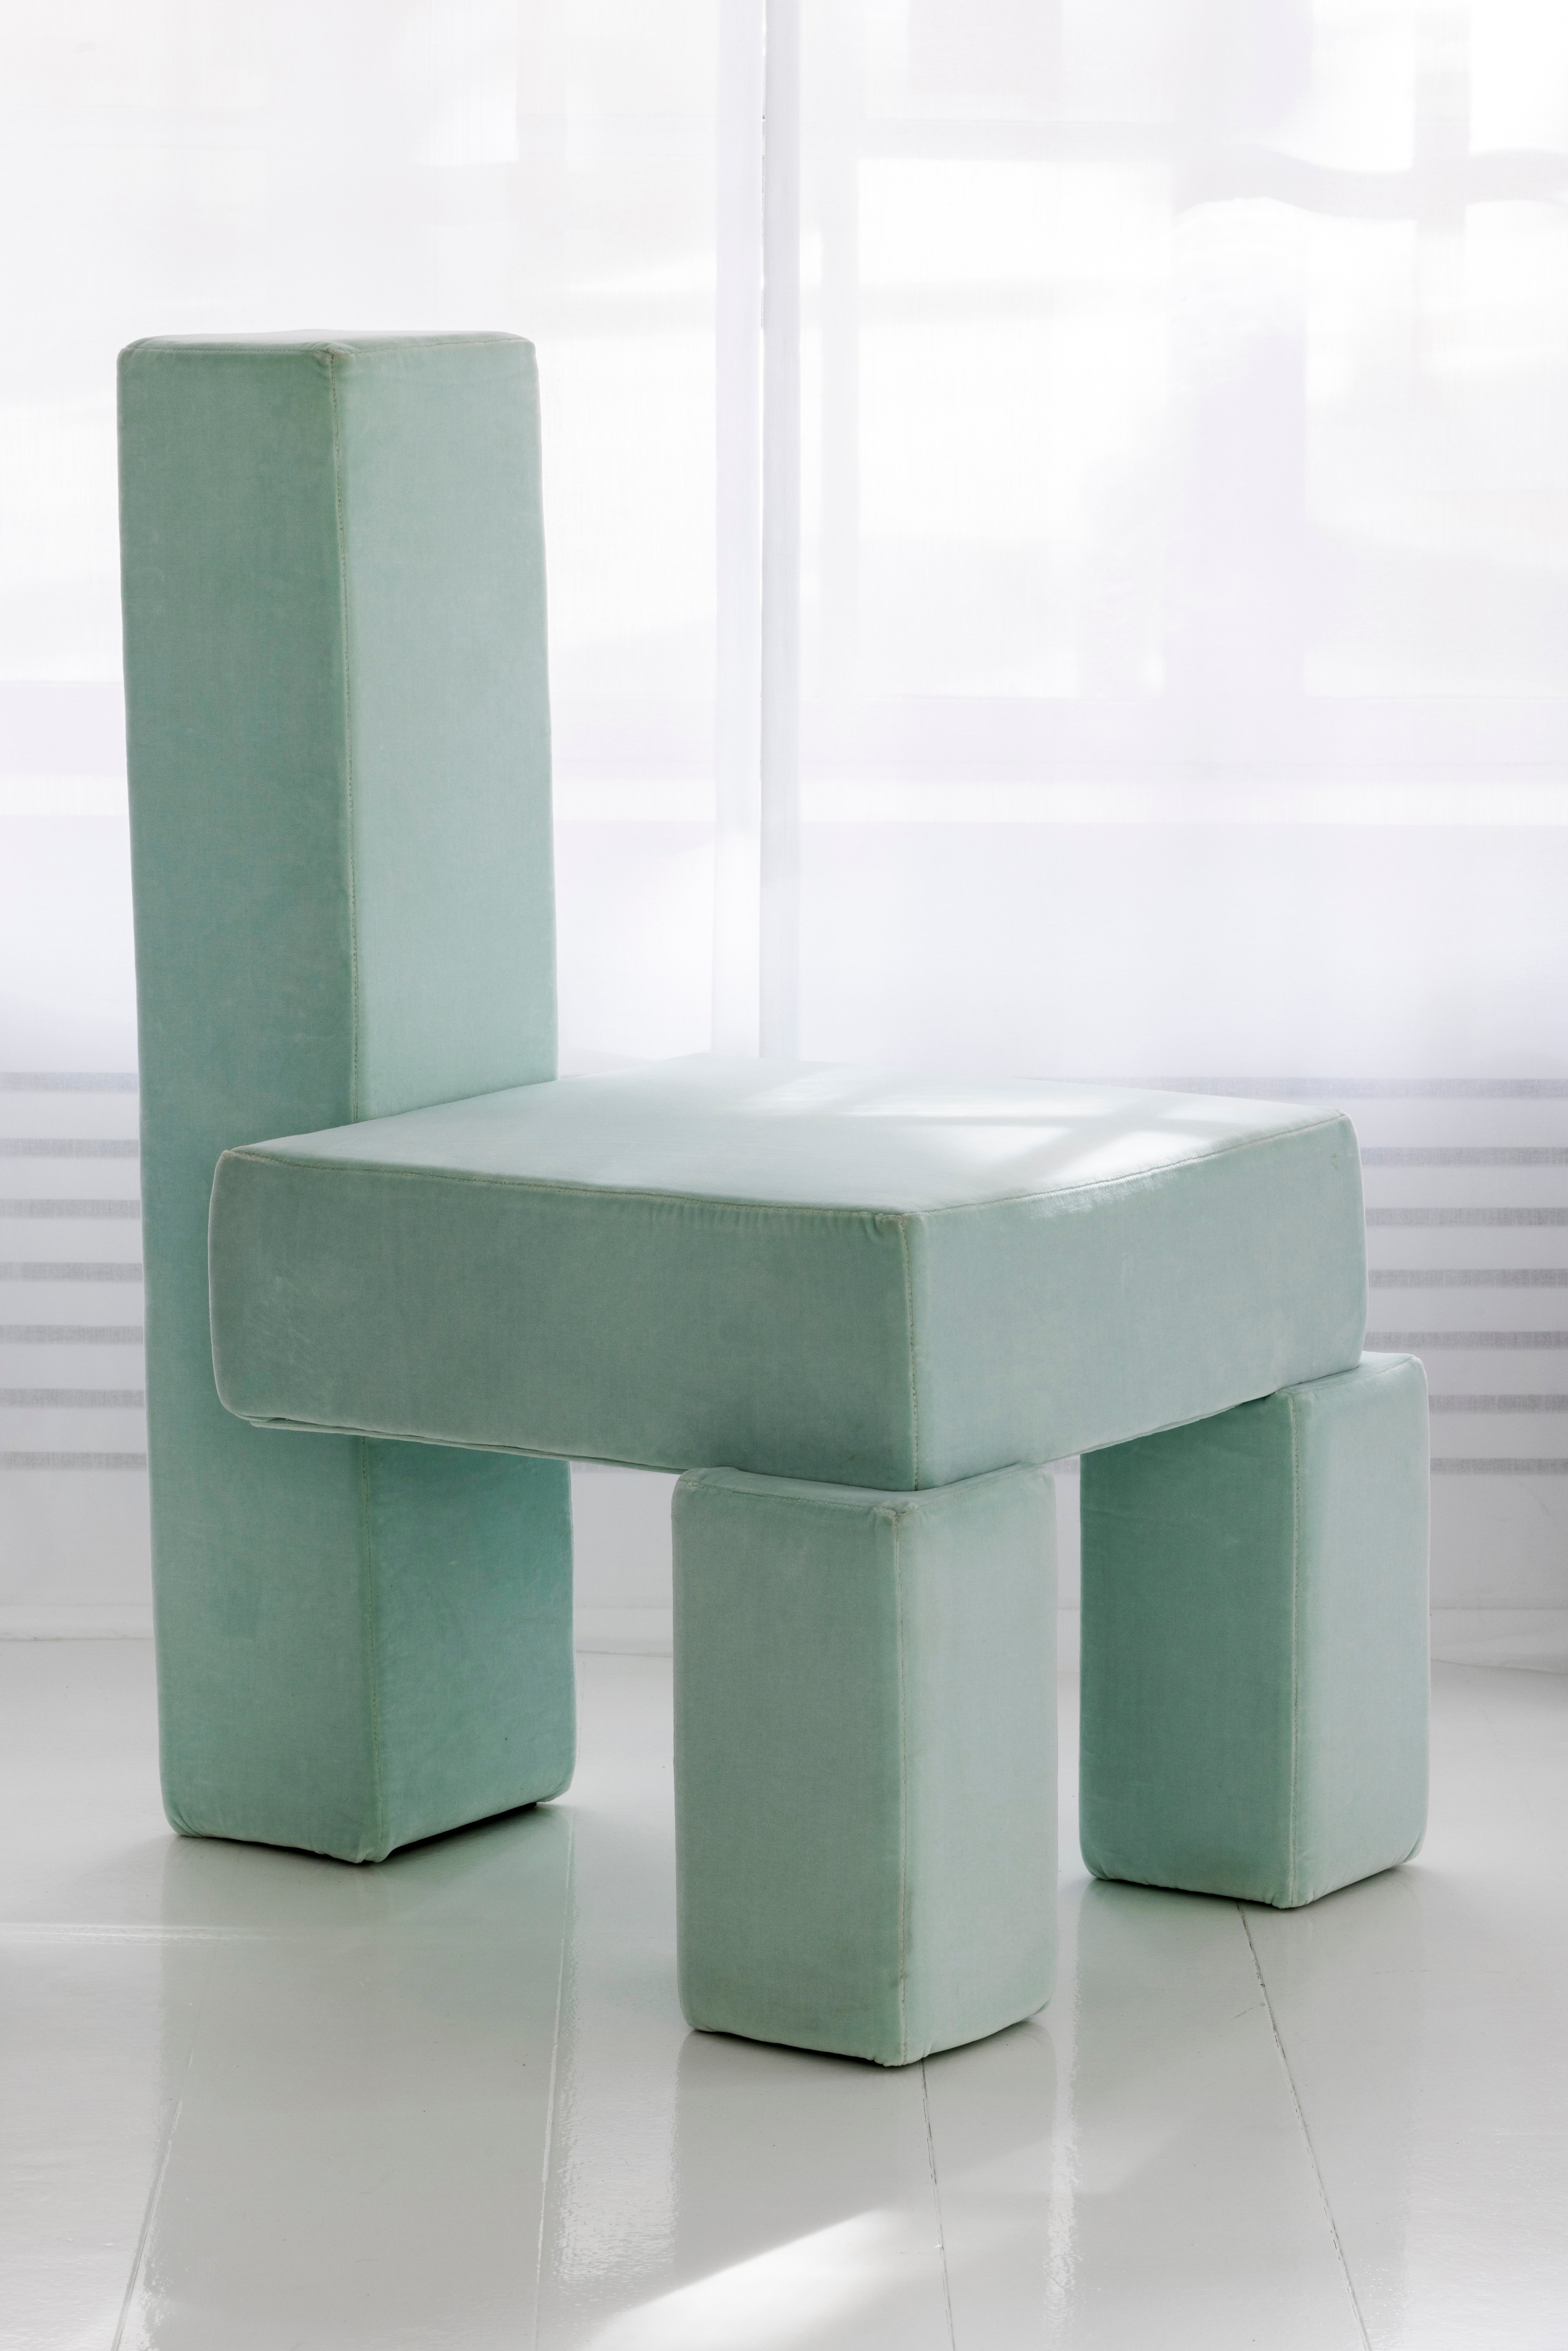 Licitra-Stuhl von Pietro Franceschini
Abmessungen: B 62 x T 71 x H 95 cm
MATERIALIEN: Samt (von Métaphores).

Jemand hat einmal gesagt, dass Einfachheit die Essenz des Glücks ist. Deshalb habe ich dieses Werk meiner Freundin Caterina Licitra